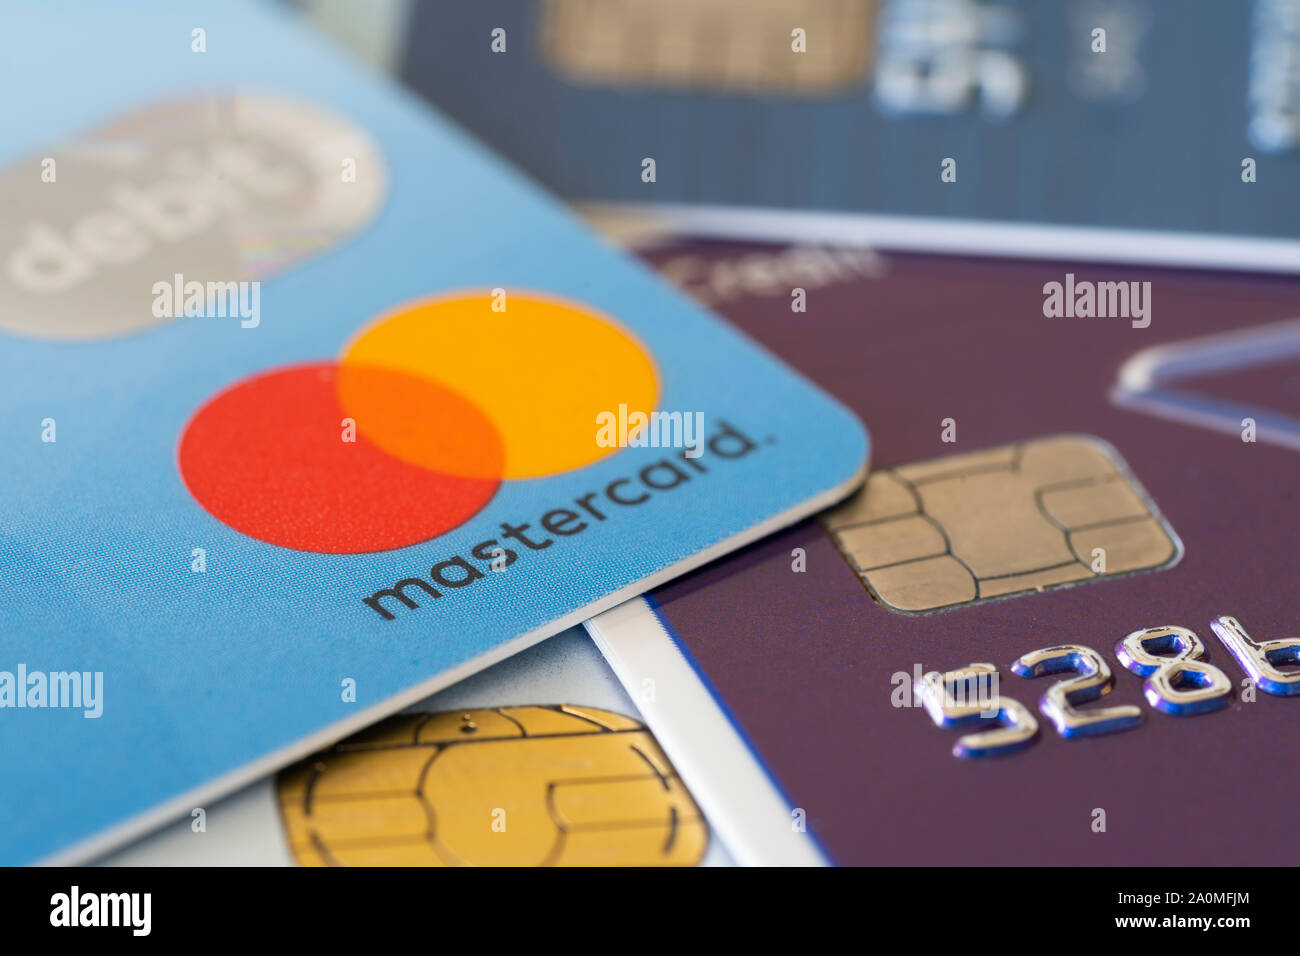 Débiter les cartes de crédit Visa et Mastercard montrant les concepts de finances publiques et de la dette Banque D'Images